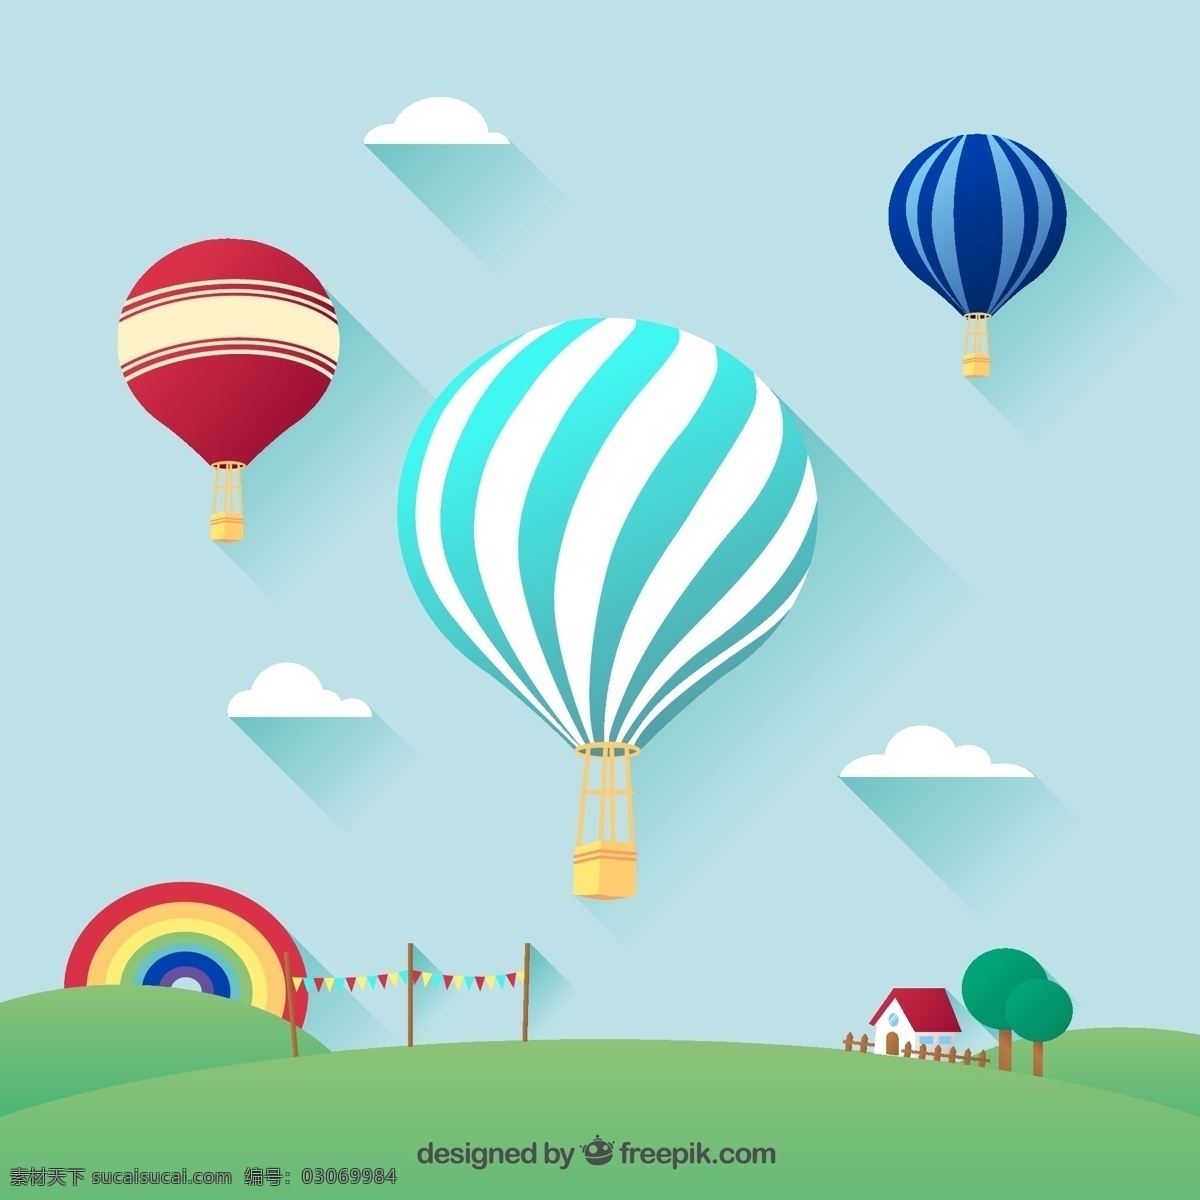 精致 热气球 插画 矢量 云朵 草地 郊外 房屋 树木 彩虹 矢量图... 青色 天蓝色